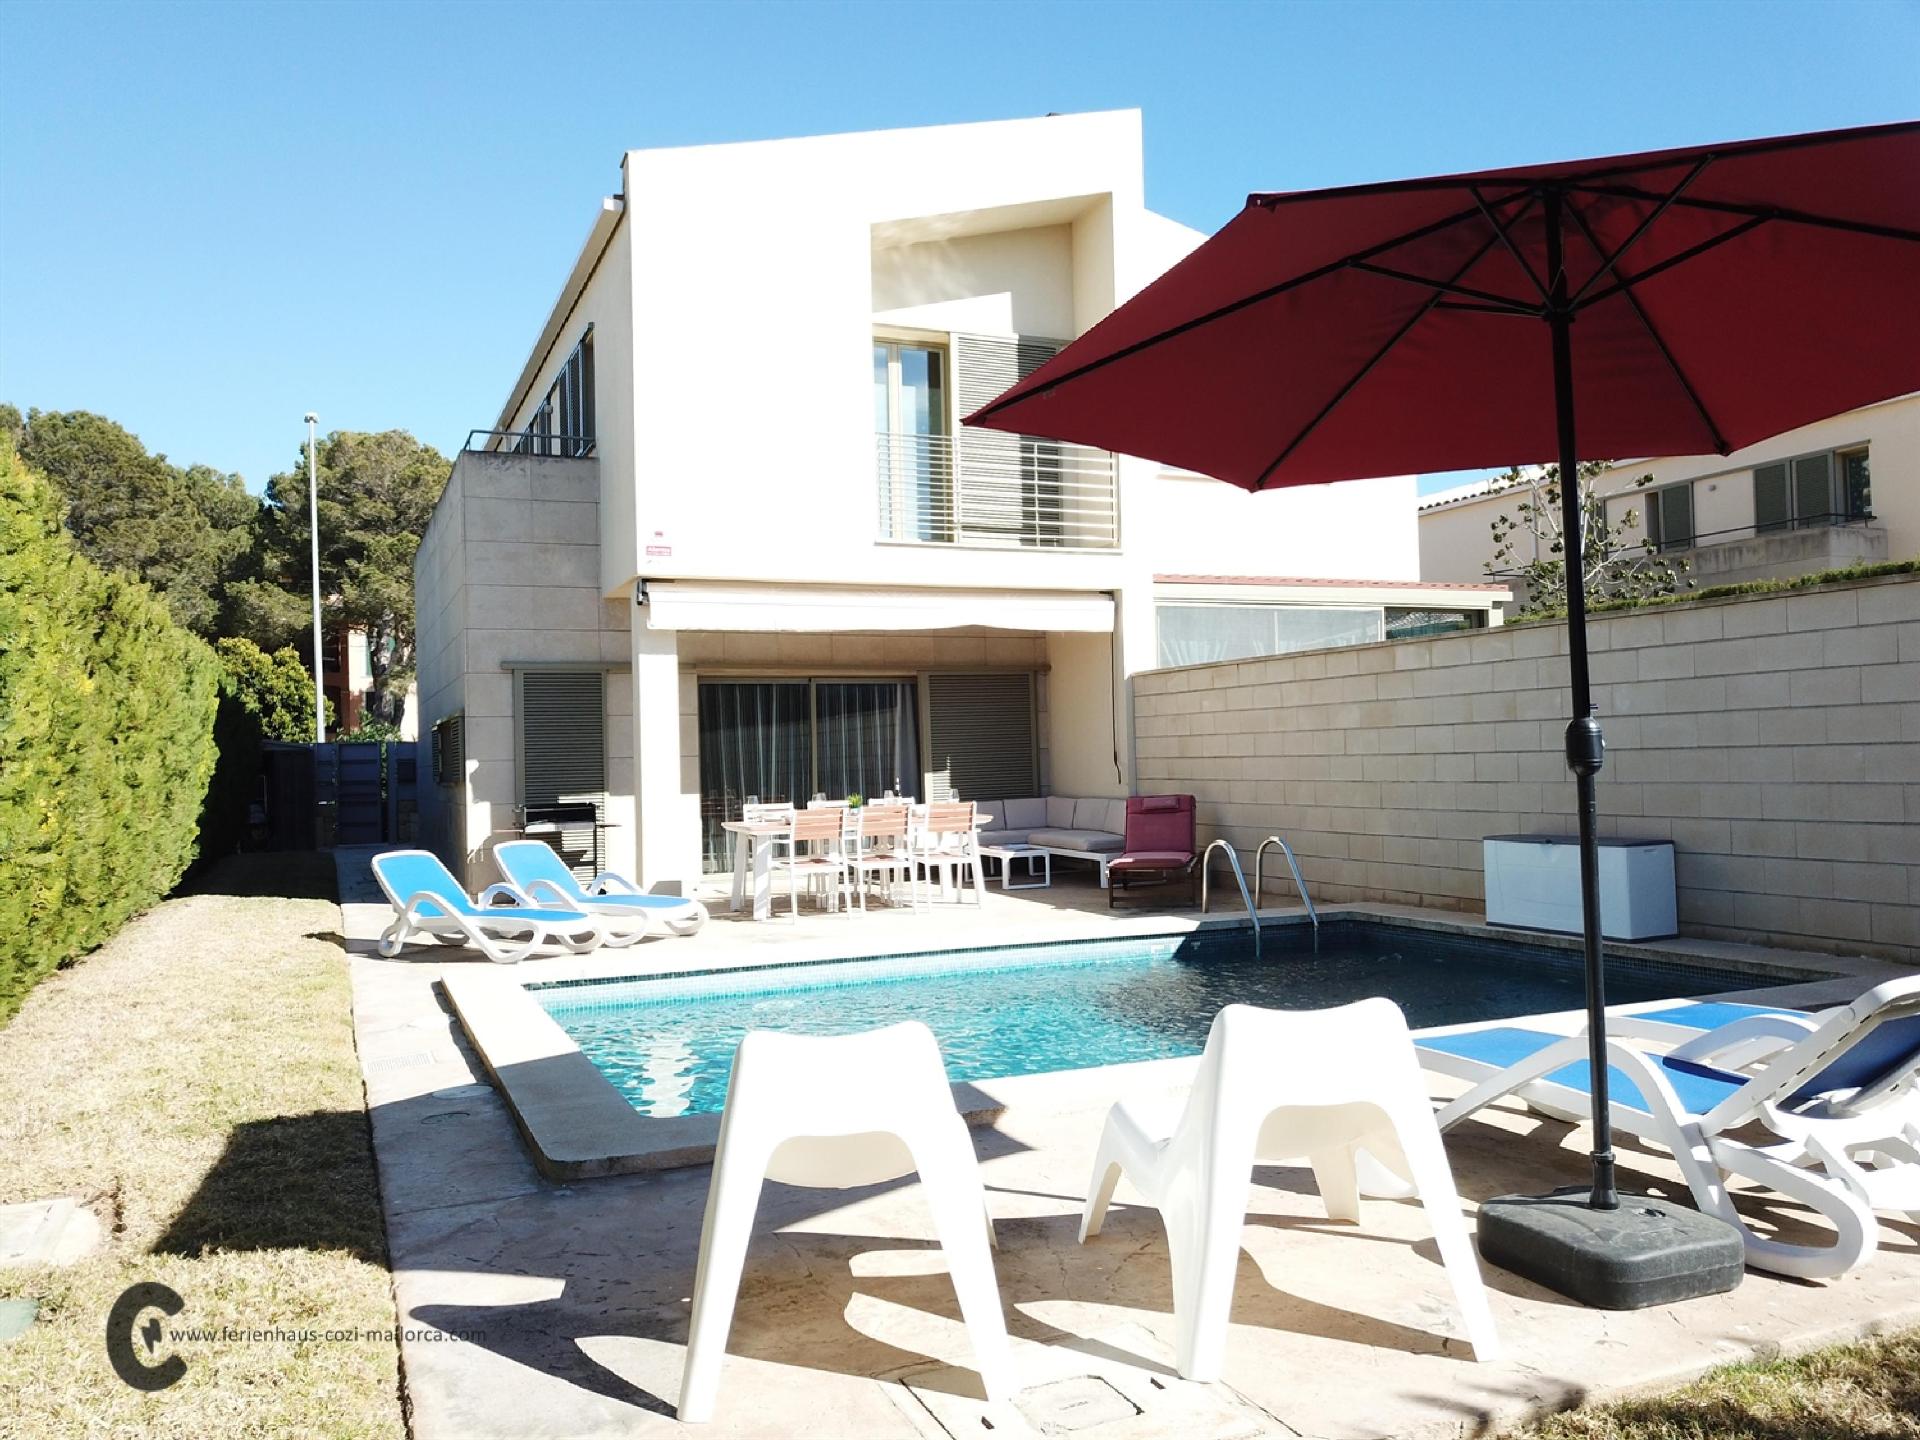 VILLA con jardín y piscina privada en zona residencial familiar y tranquila aire acondicionado y wi